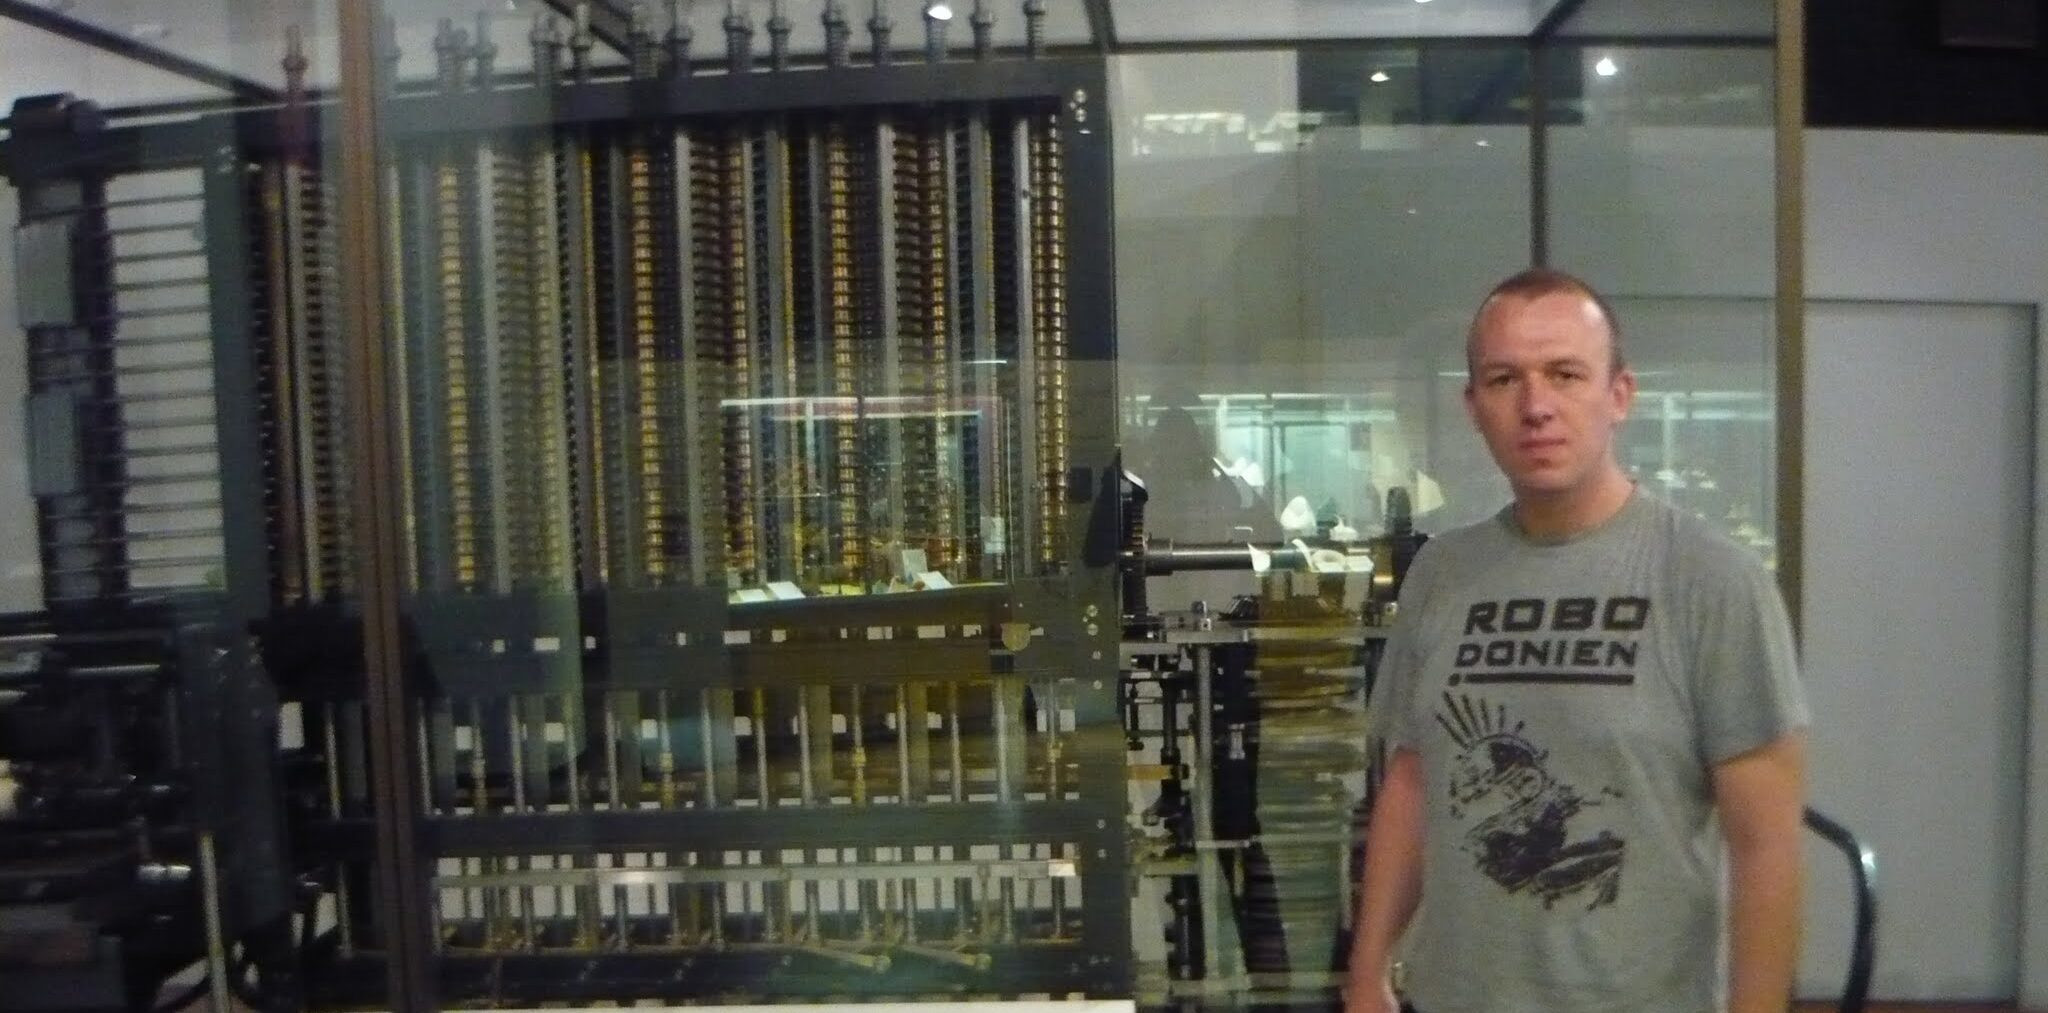 Das Bild zeigt mich neben einer Differenz-Maschine nach Charles Babage im London Science Museum 2010.